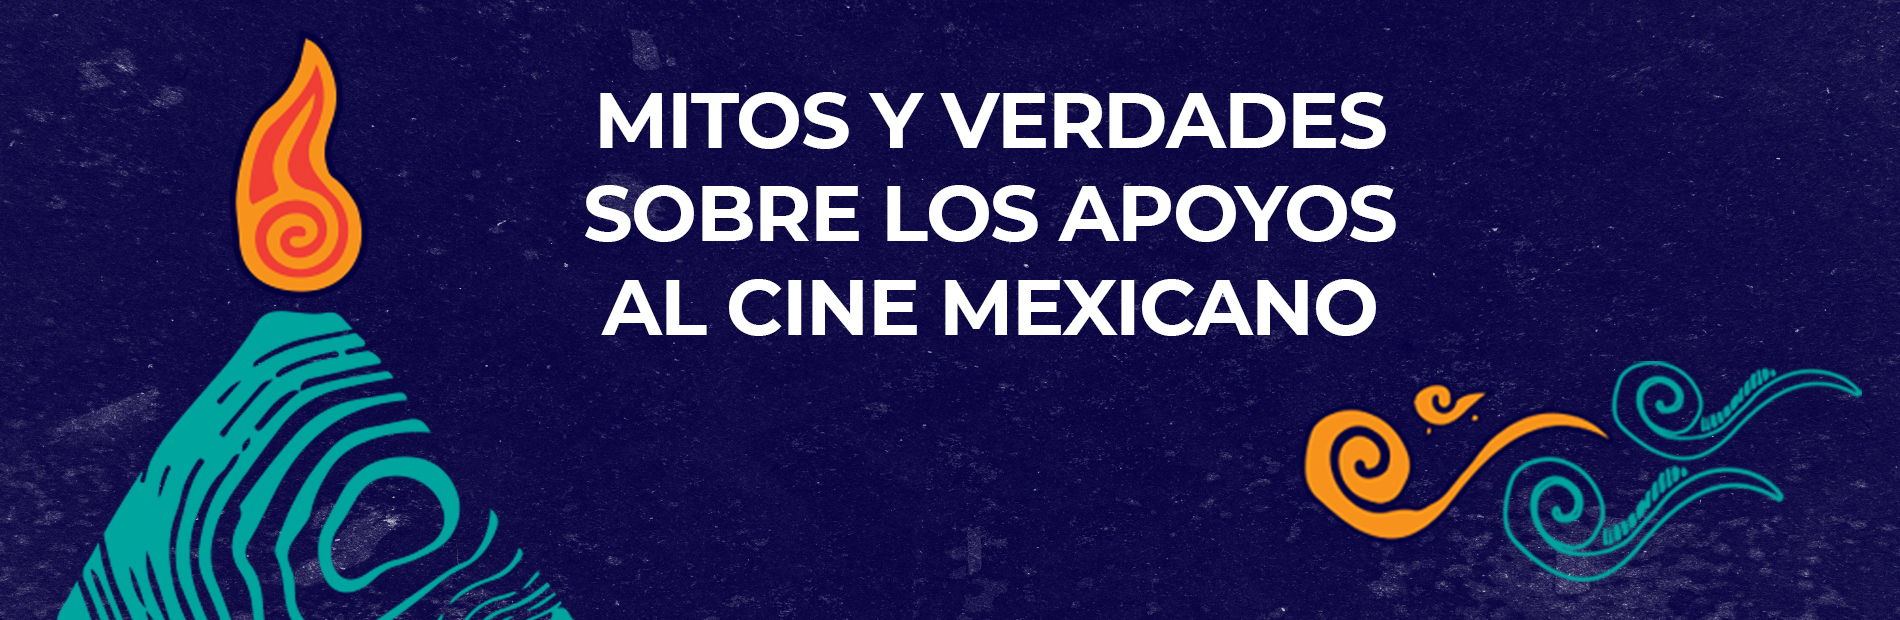 Mitos y verdades sobre los apoyos al cine mexicano